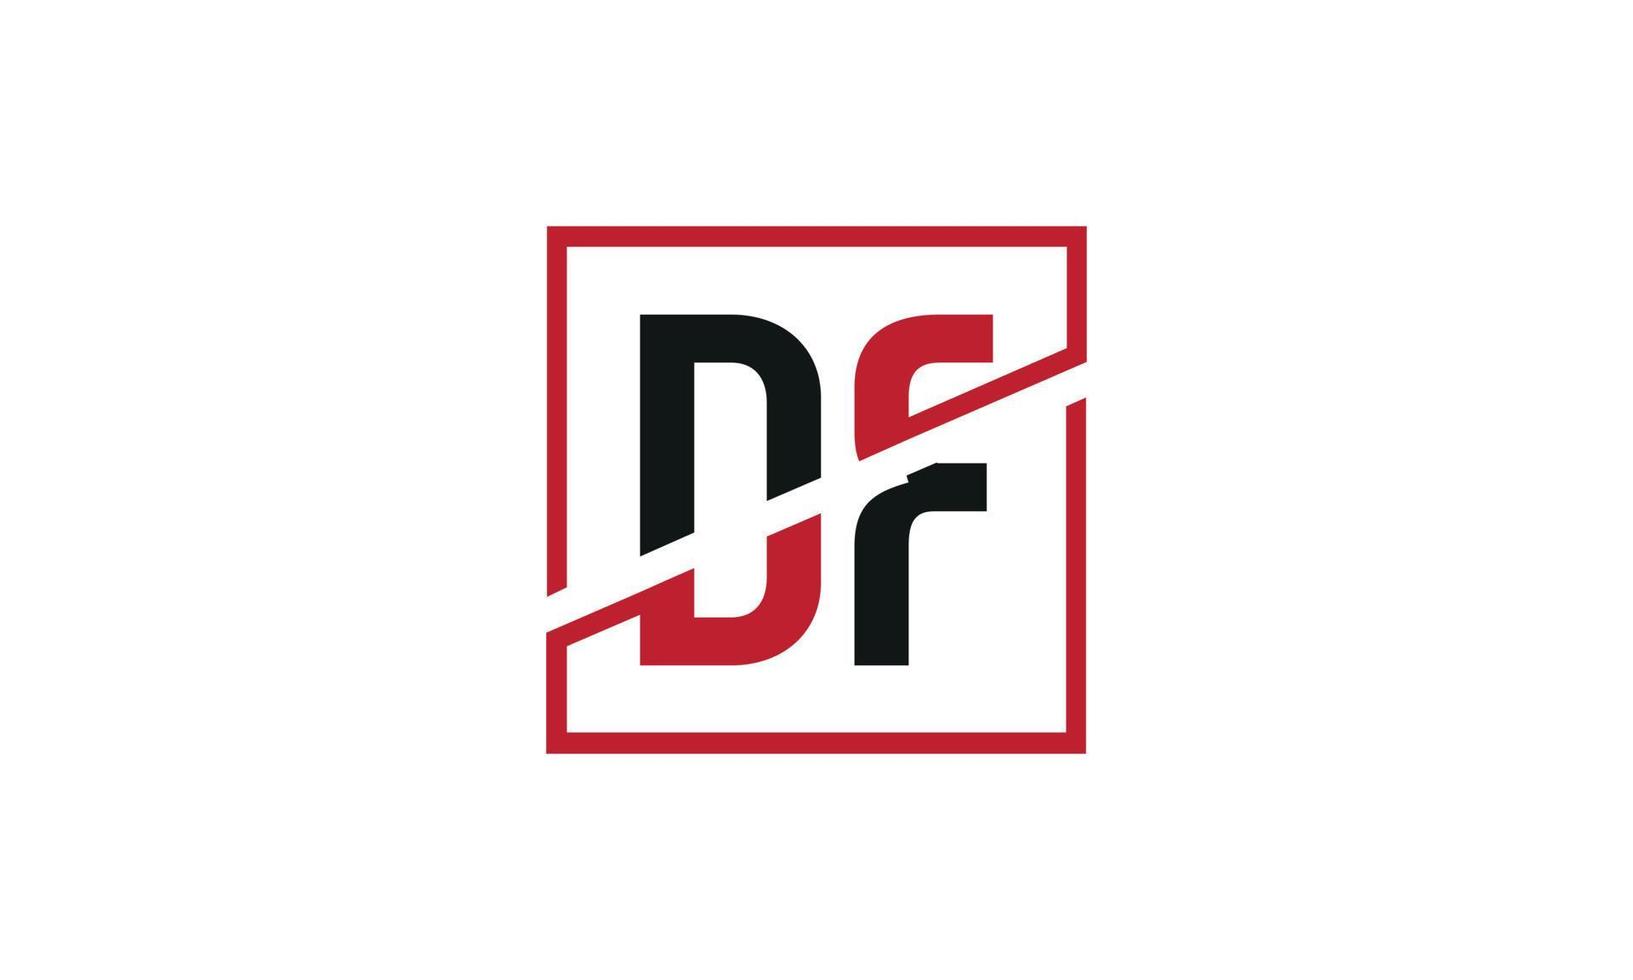 df-Logo-Design. anfängliches df-Buchstaben-Logo-Monogramm-Design in schwarzer und roter Farbe mit quadratischer Form. Pro-Vektor vektor